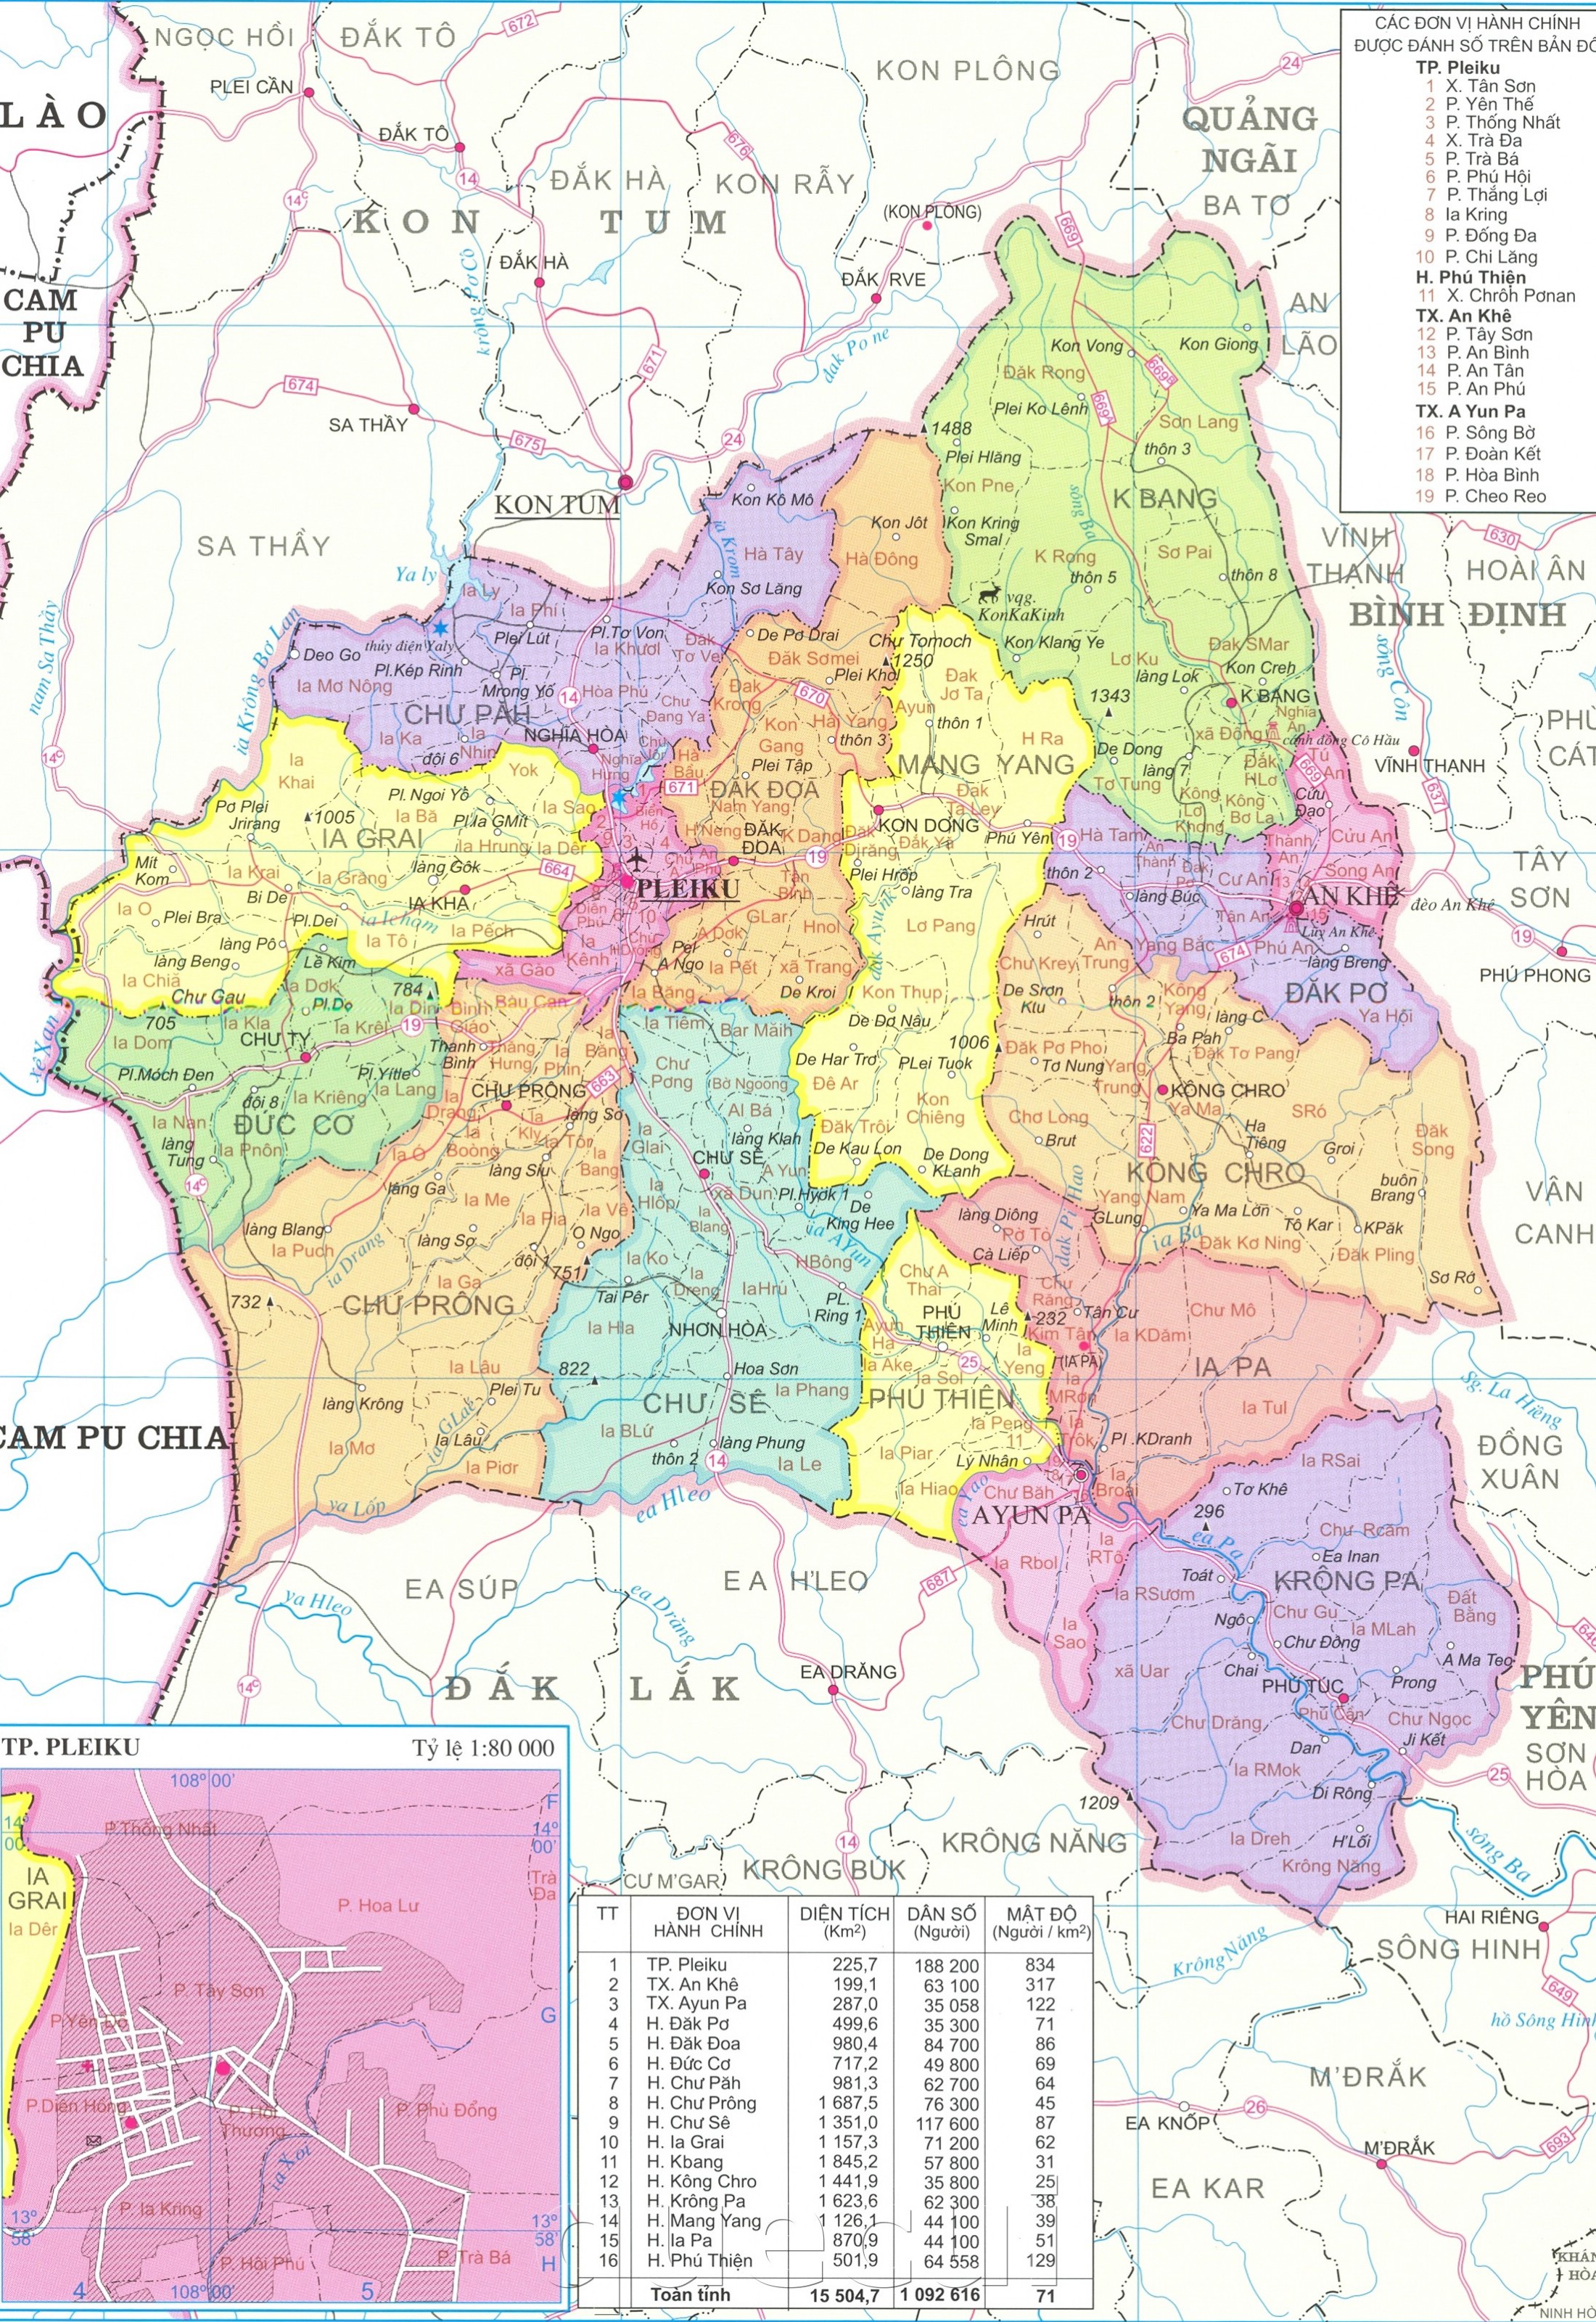 Bản đồ hành chính tỉnh Gia Lai khổ lớn năm 2024 - bản đồ hành chính tỉnh Gia Lai:
Với bản đồ hành chính khổ lớn của tỉnh Gia Lai năm 2024, bạn có thể dễ dàng tra cứu thông tin về các khu vực và địa điểm quan trọng. Từ đó, bạn có đầy đủ kiến thức để tìm hiểu và tận hưởng những điều thú vị nhất của Gia Lai.